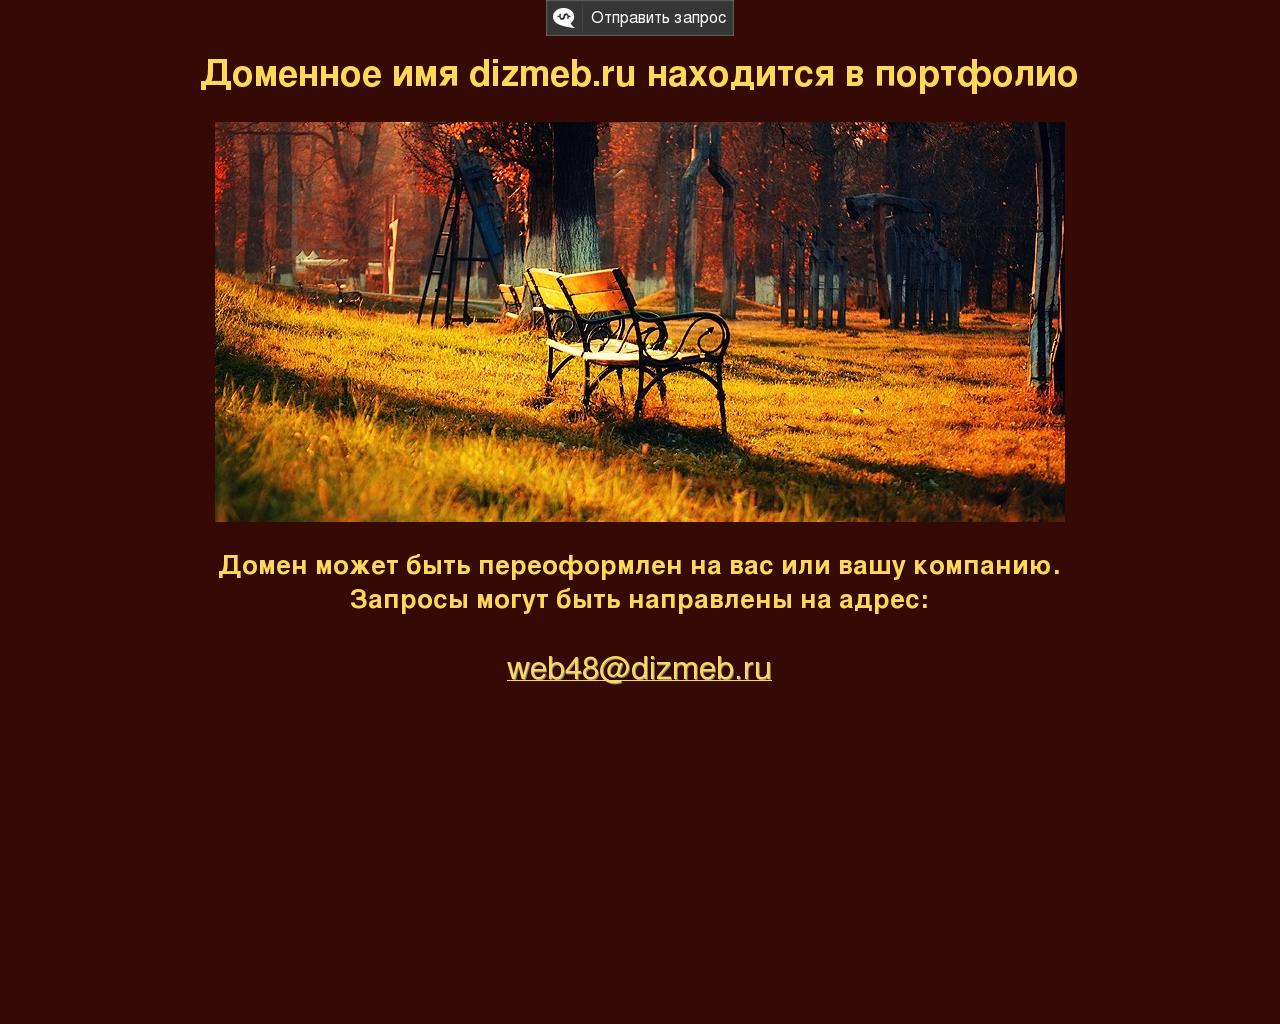 Изображение сайта dizmeb.ru в разрешении 1280x1024